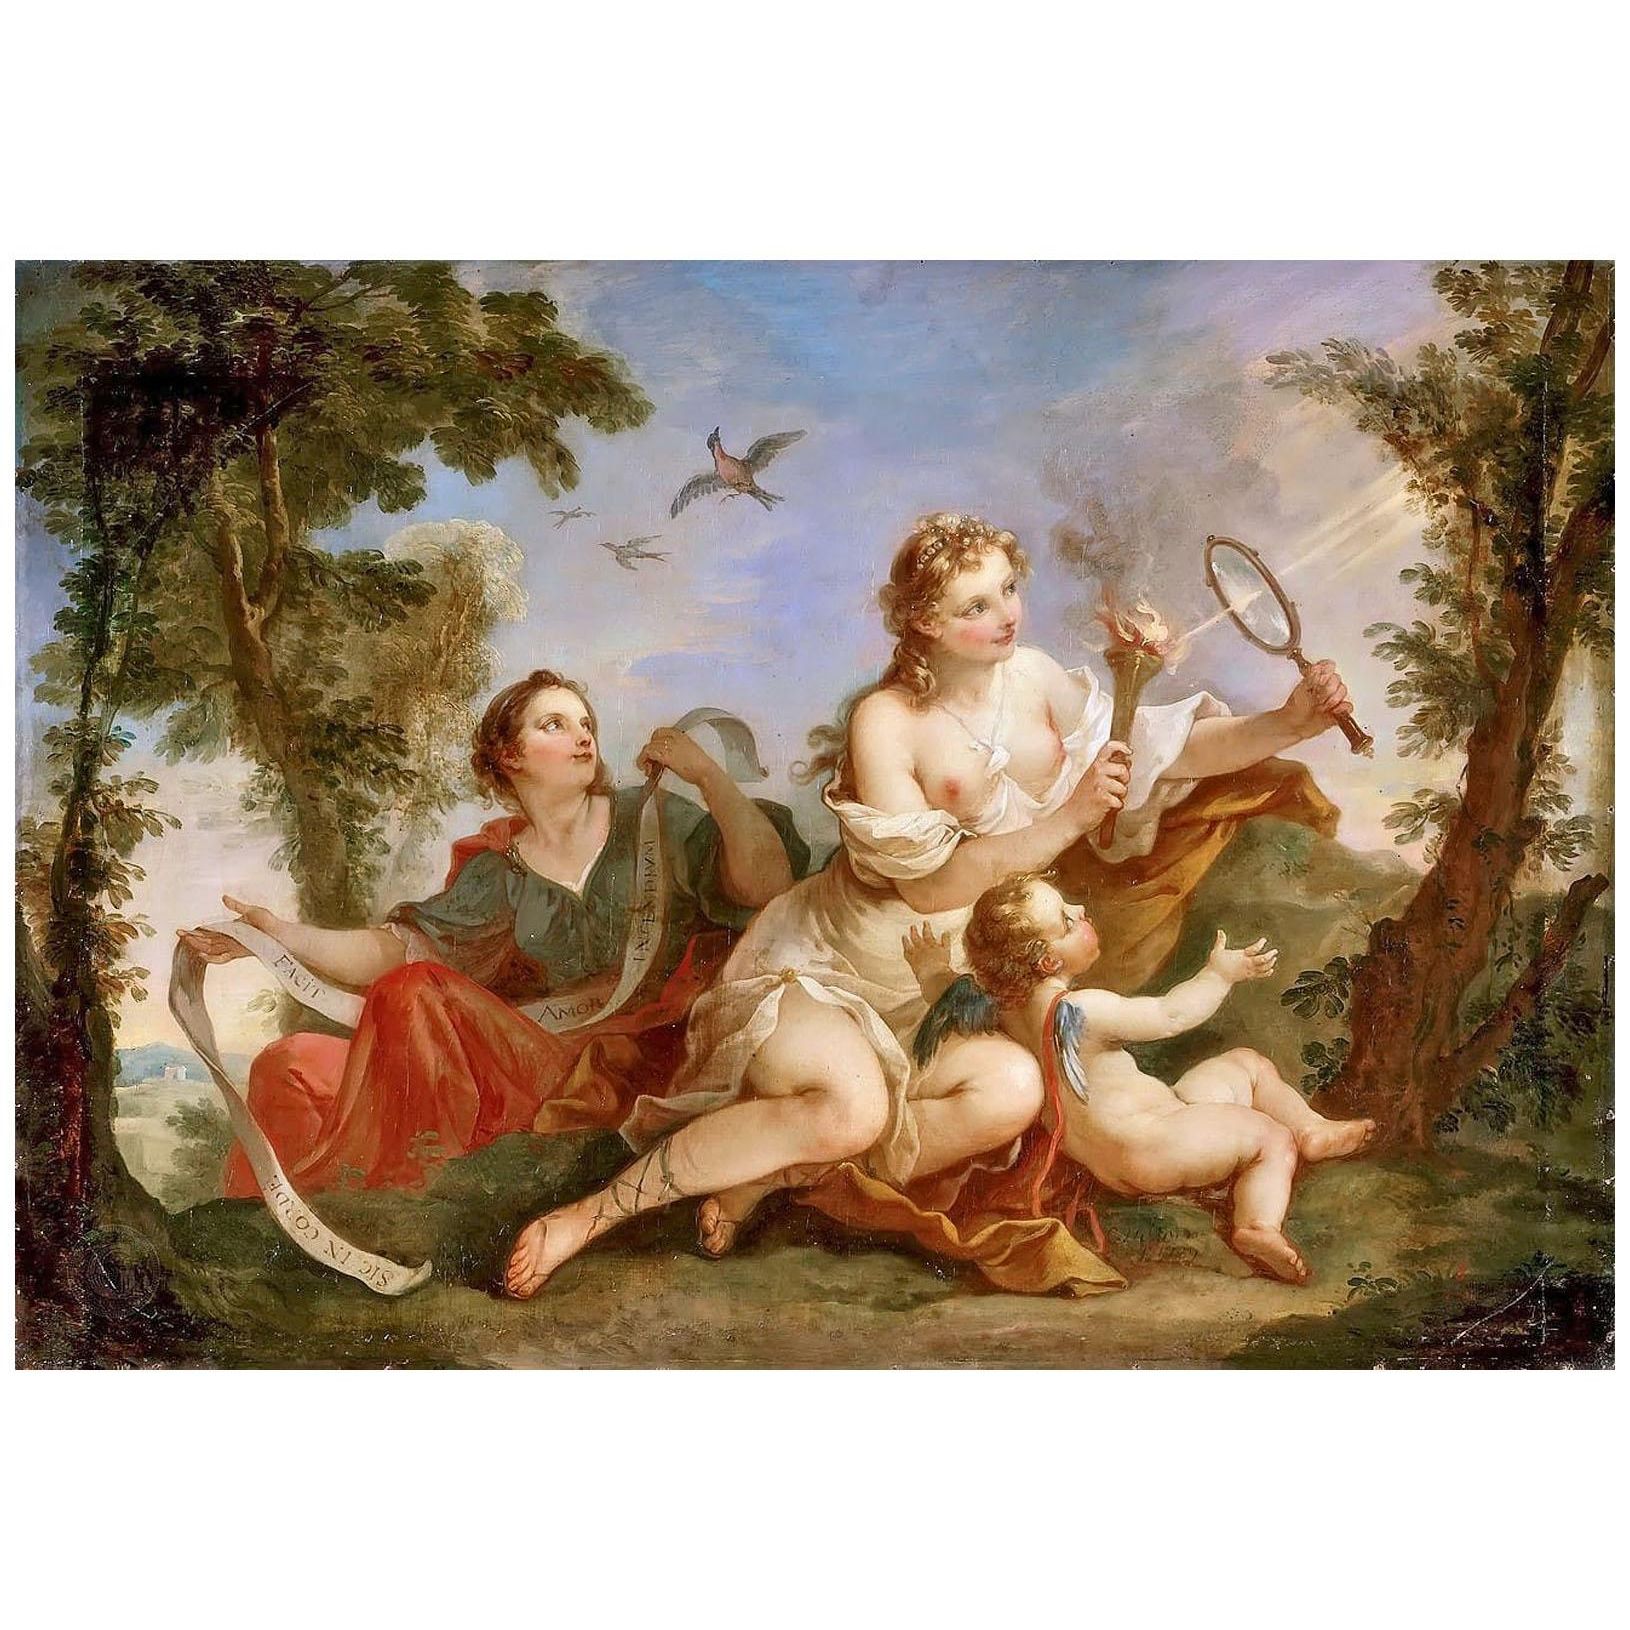 Charles-Joseph Natoire. La beauté allume la flamme de l'amour. 1739. Chateau de Versailles